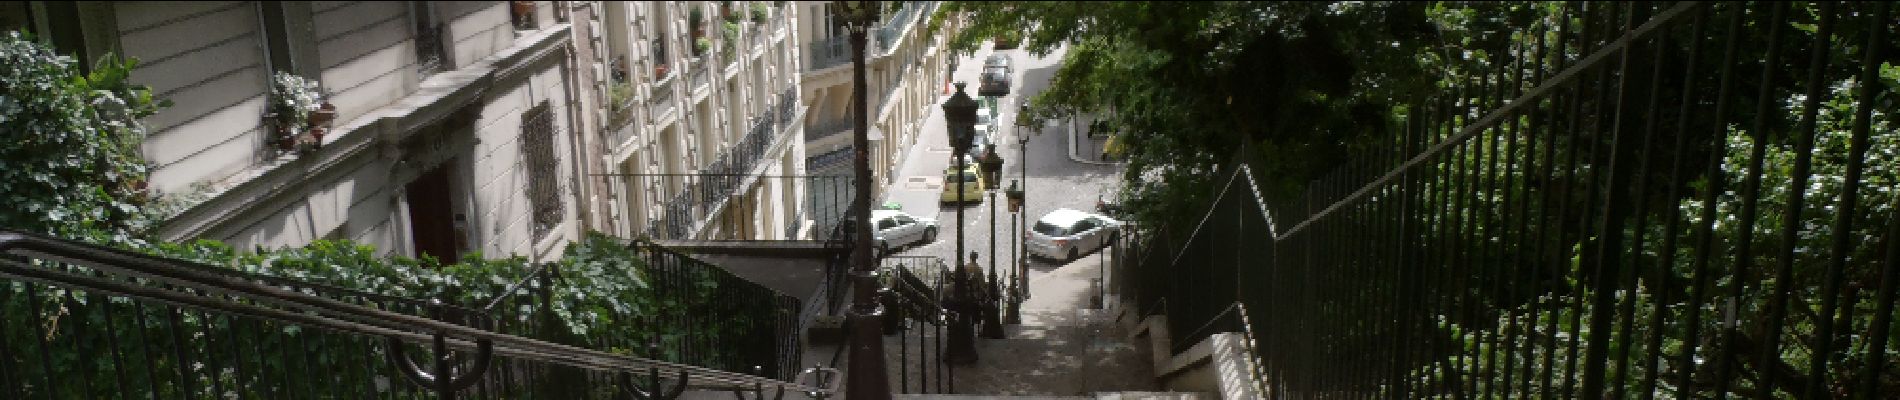 Point d'intérêt Paris - Escaliers - Photo